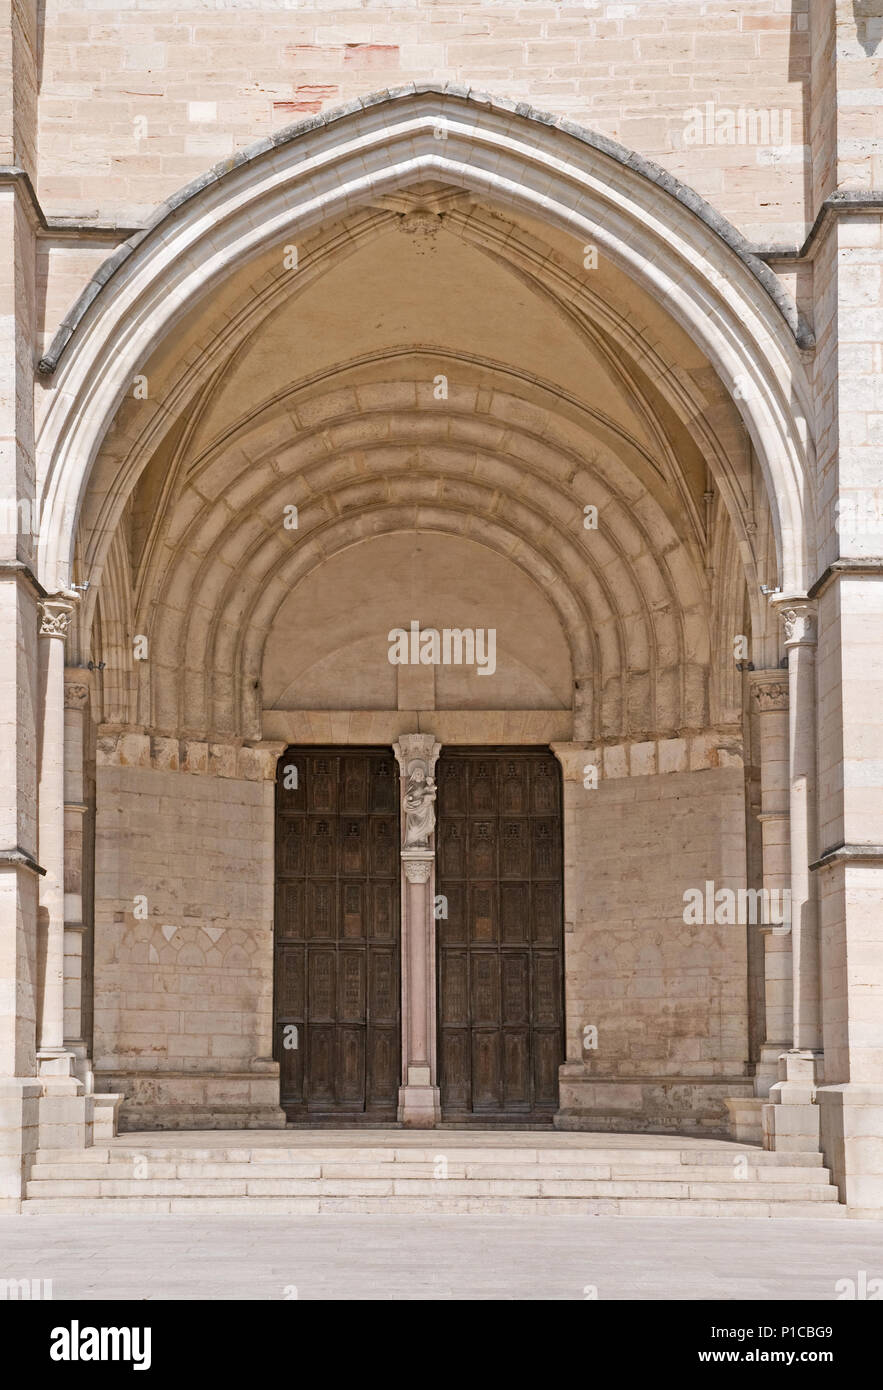 Porche de entrada a la catedral de Notre Dame o Basilique Collégiale Notre-dame Beaune Francia construido en estilos románico y gótico XI a XV Foto de stock